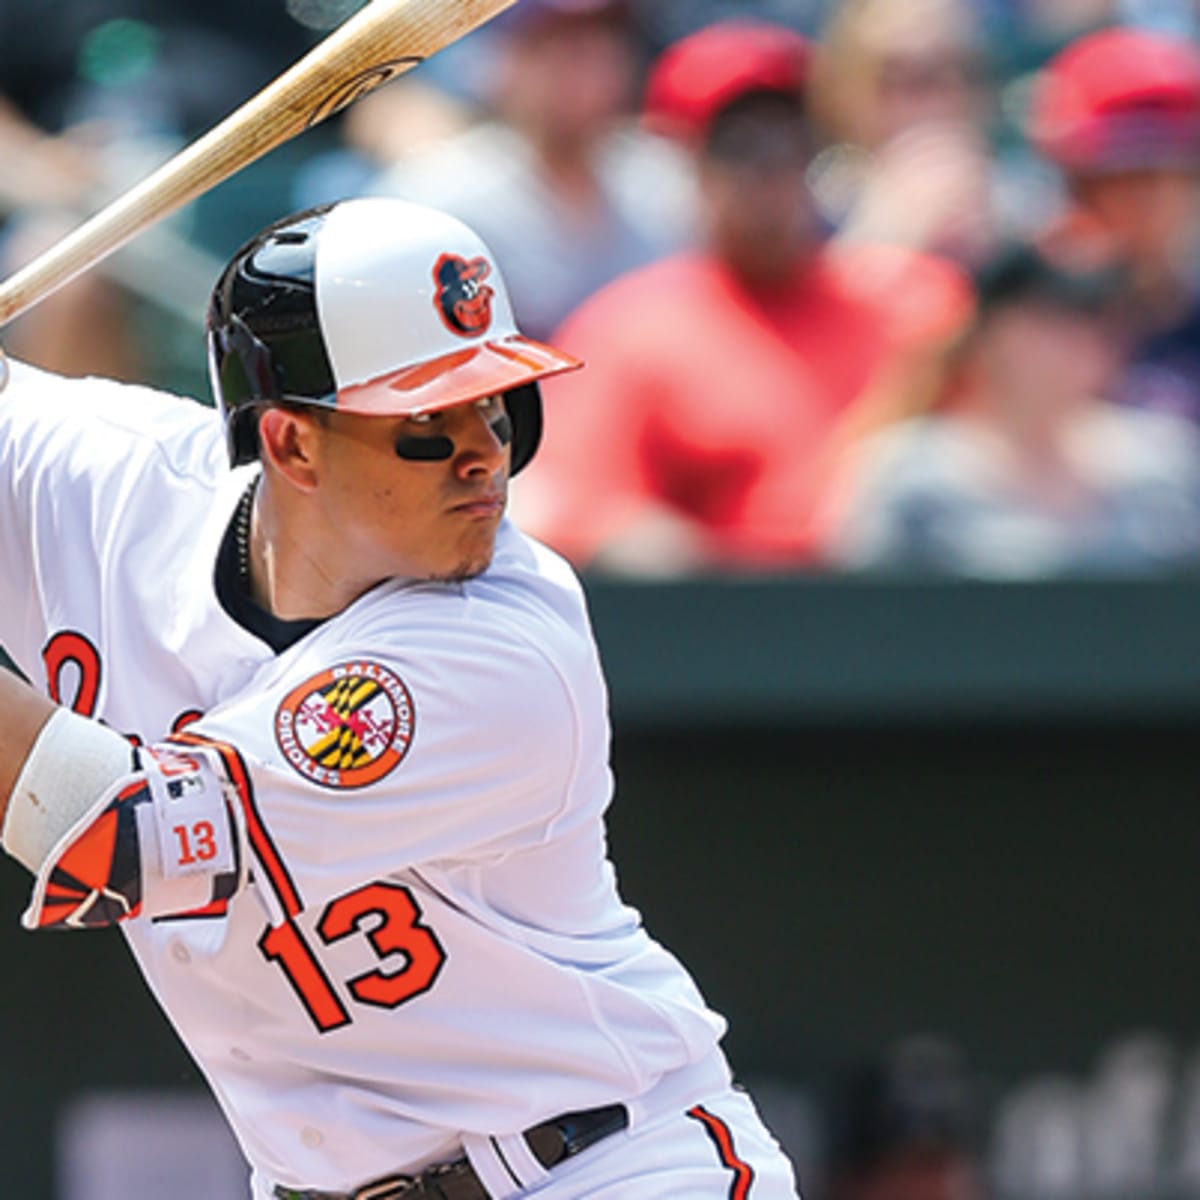 Baltimore Orioles: Hyun Soo Kim Ready to Make his Mark